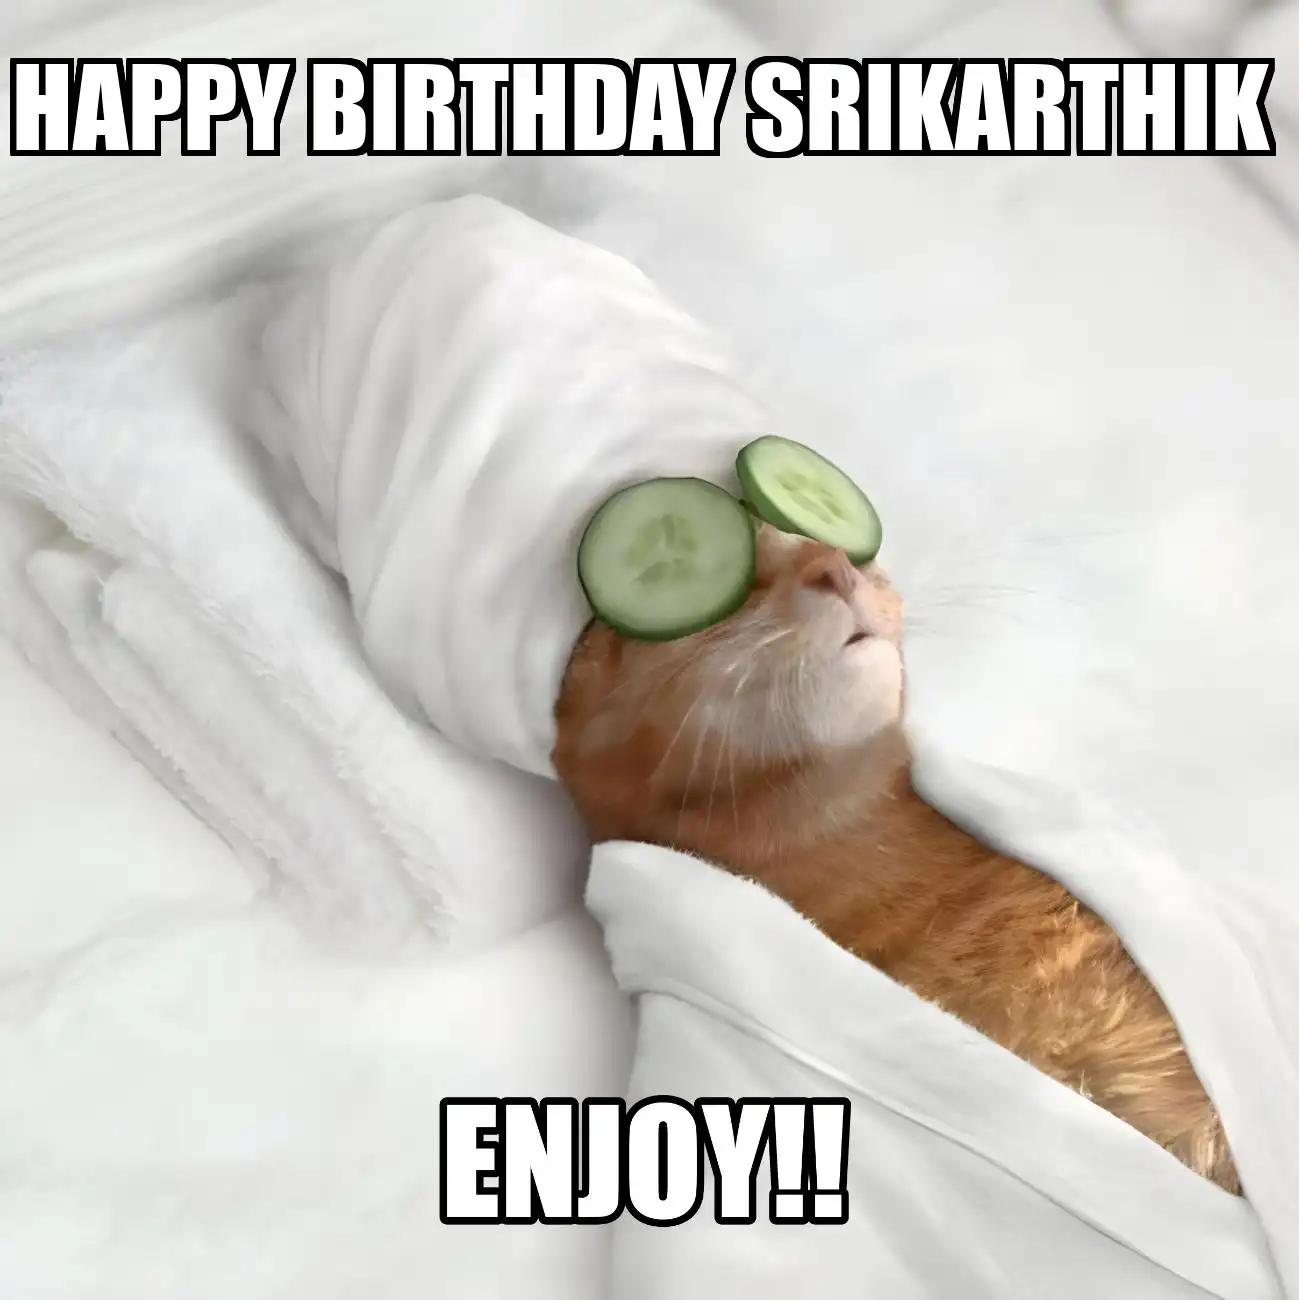 Happy Birthday Srikarthik Enjoy Cat Meme